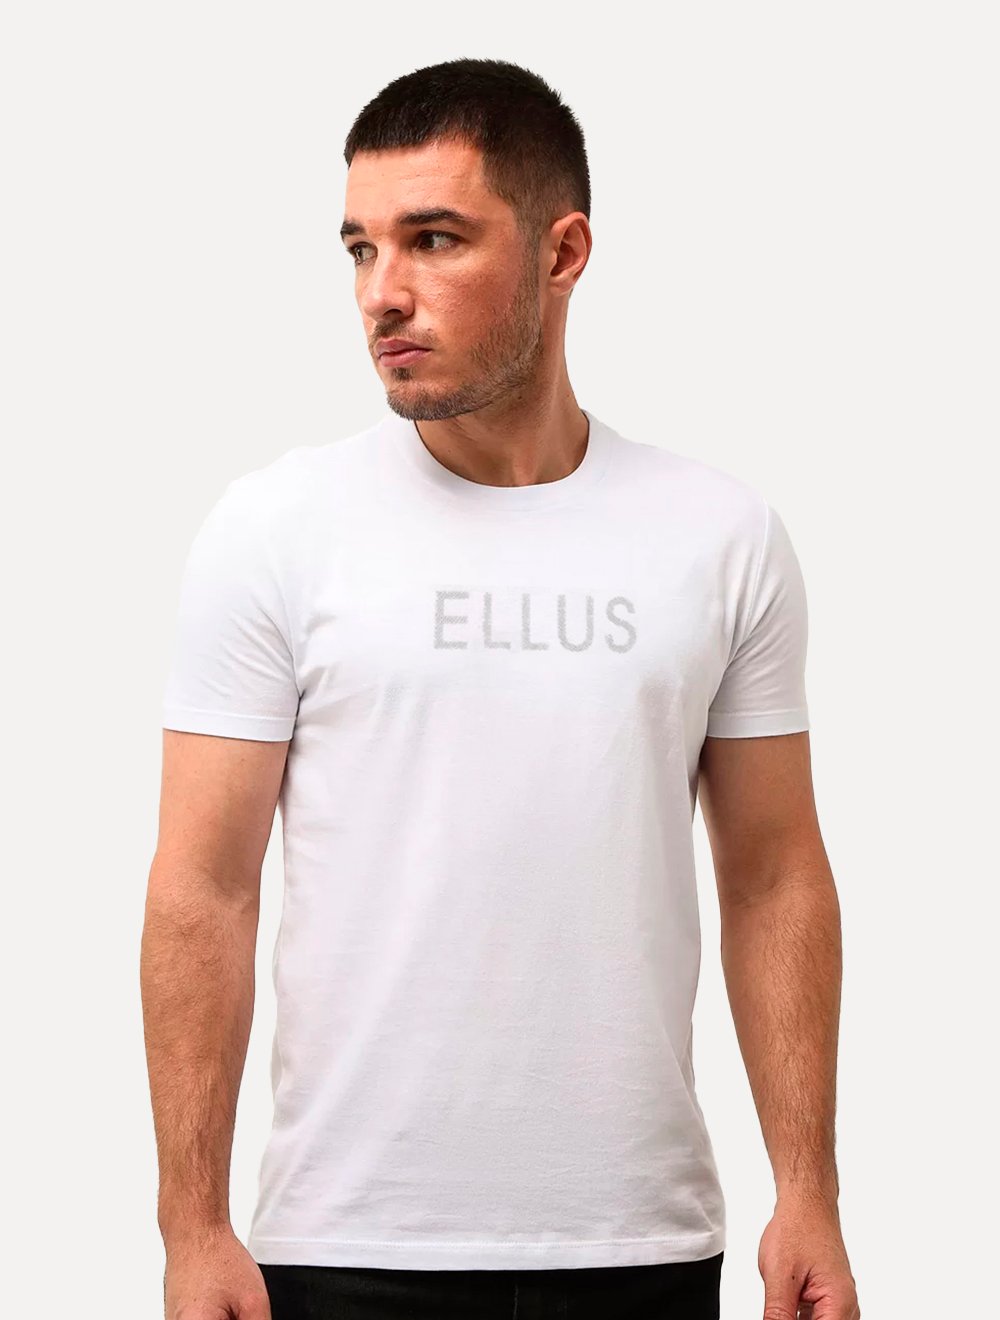 Camiseta Ellus Cotton Fine Dots Foils Classic Branca